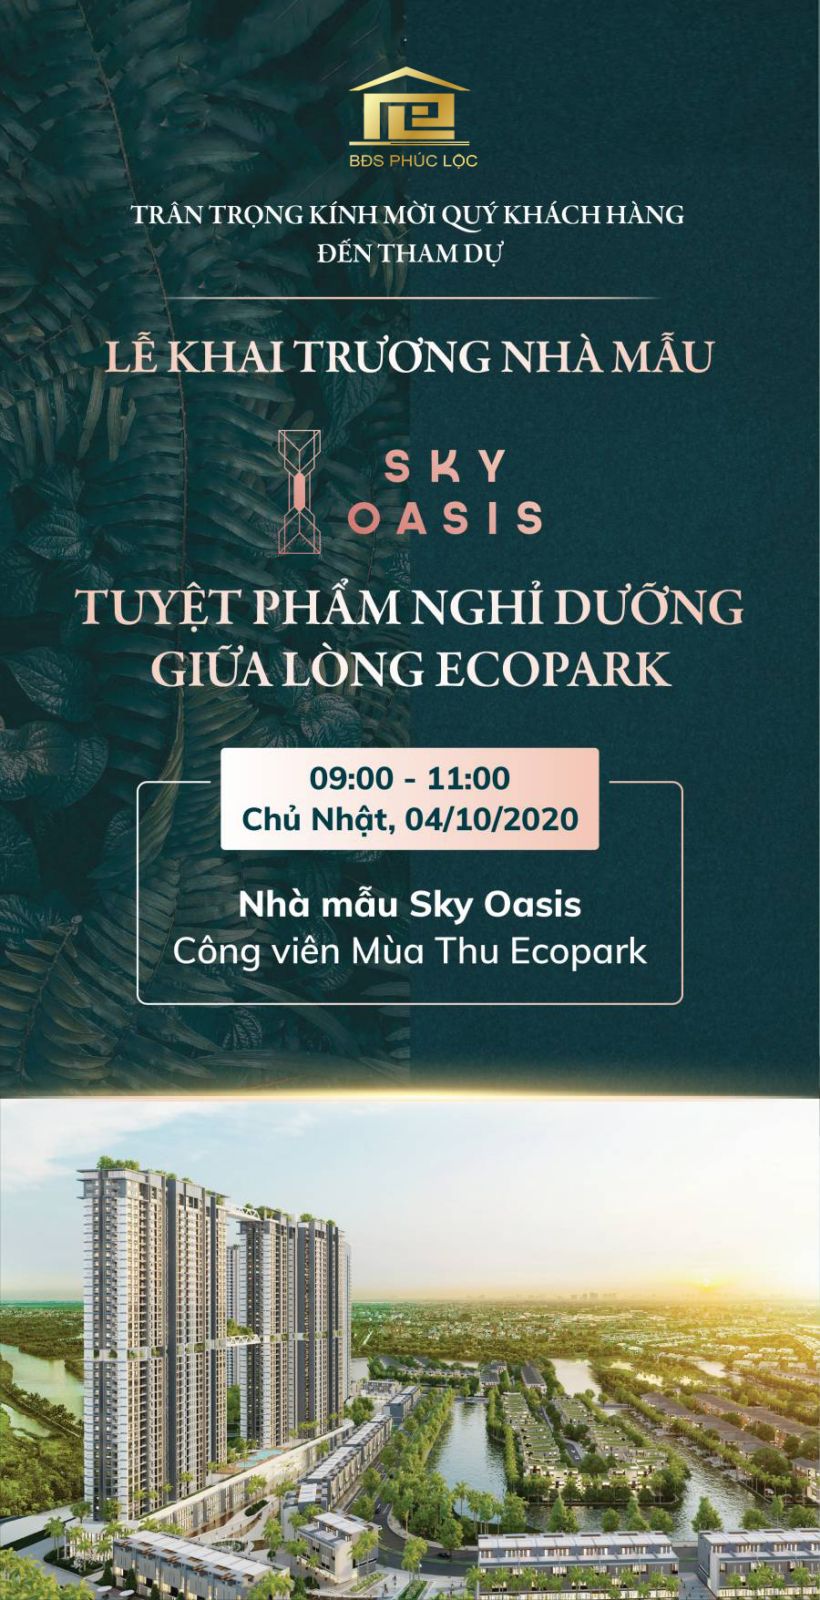 Sky Oasis Ecopark là dự án siêu sang tại khu vực Bắc Đông Trù, Hà Nội. Với thiết kế hiện đại, không gian mở rộng và sức chứa lớn, đây là nơi đáng sống nhất dành cho những ai yêu thích sự yên tĩnh và xanh mát. Hình ảnh Sky Oasis Ecopark sẽ giúp bạn thấy được sự đẳng cấp của dự án này.